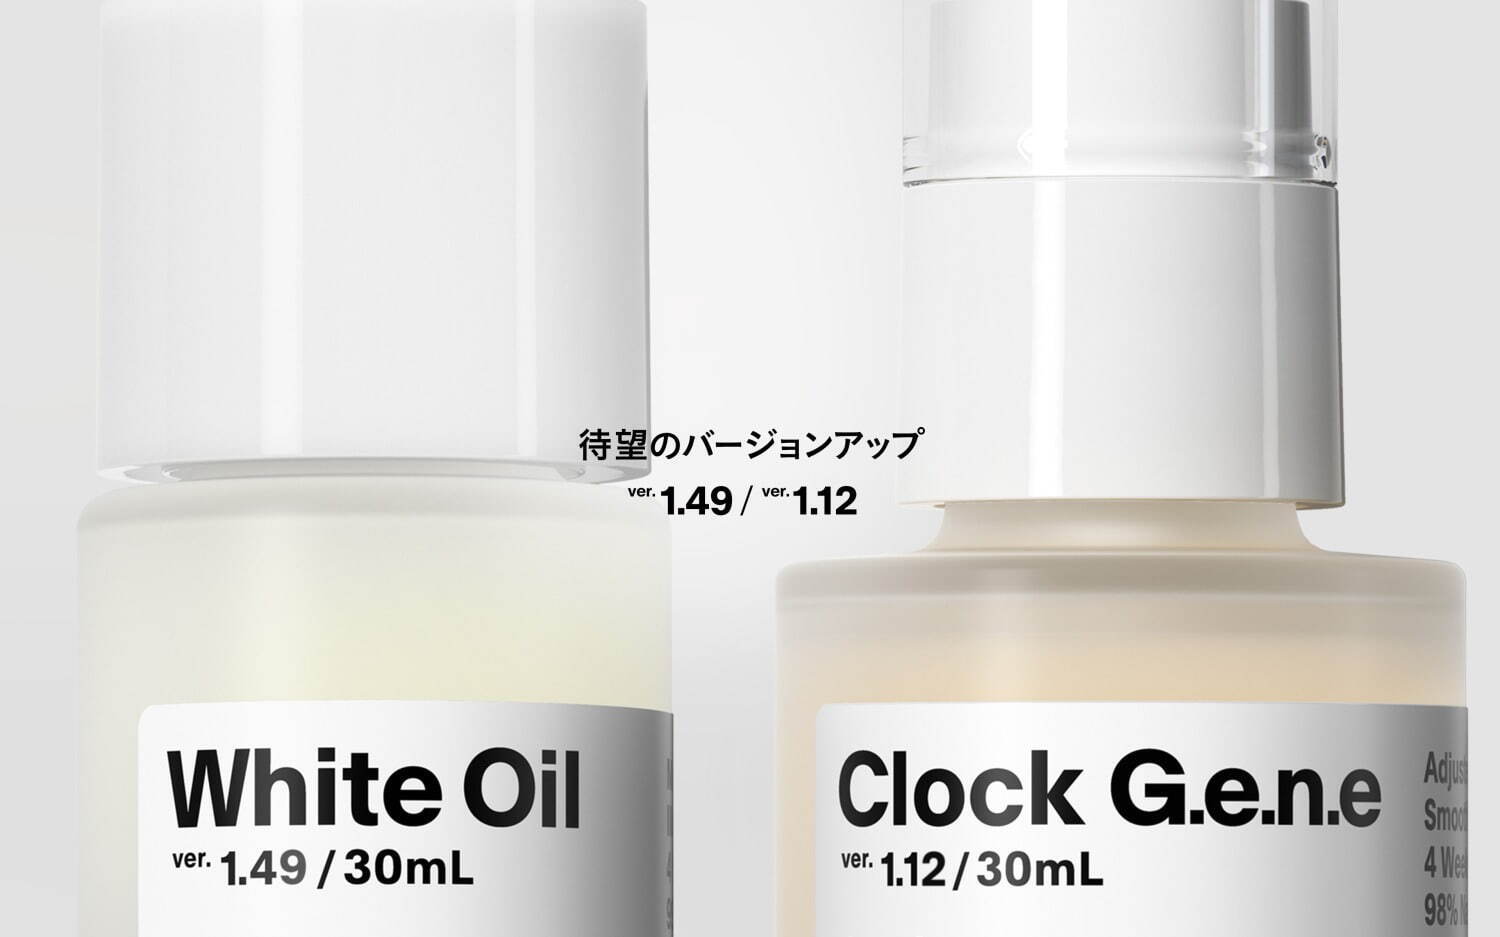 左から) 「白いオイル ver.1.49」30mL 7,040円
「時計遺伝美容液 ver. 1.12」30mL 7,700円